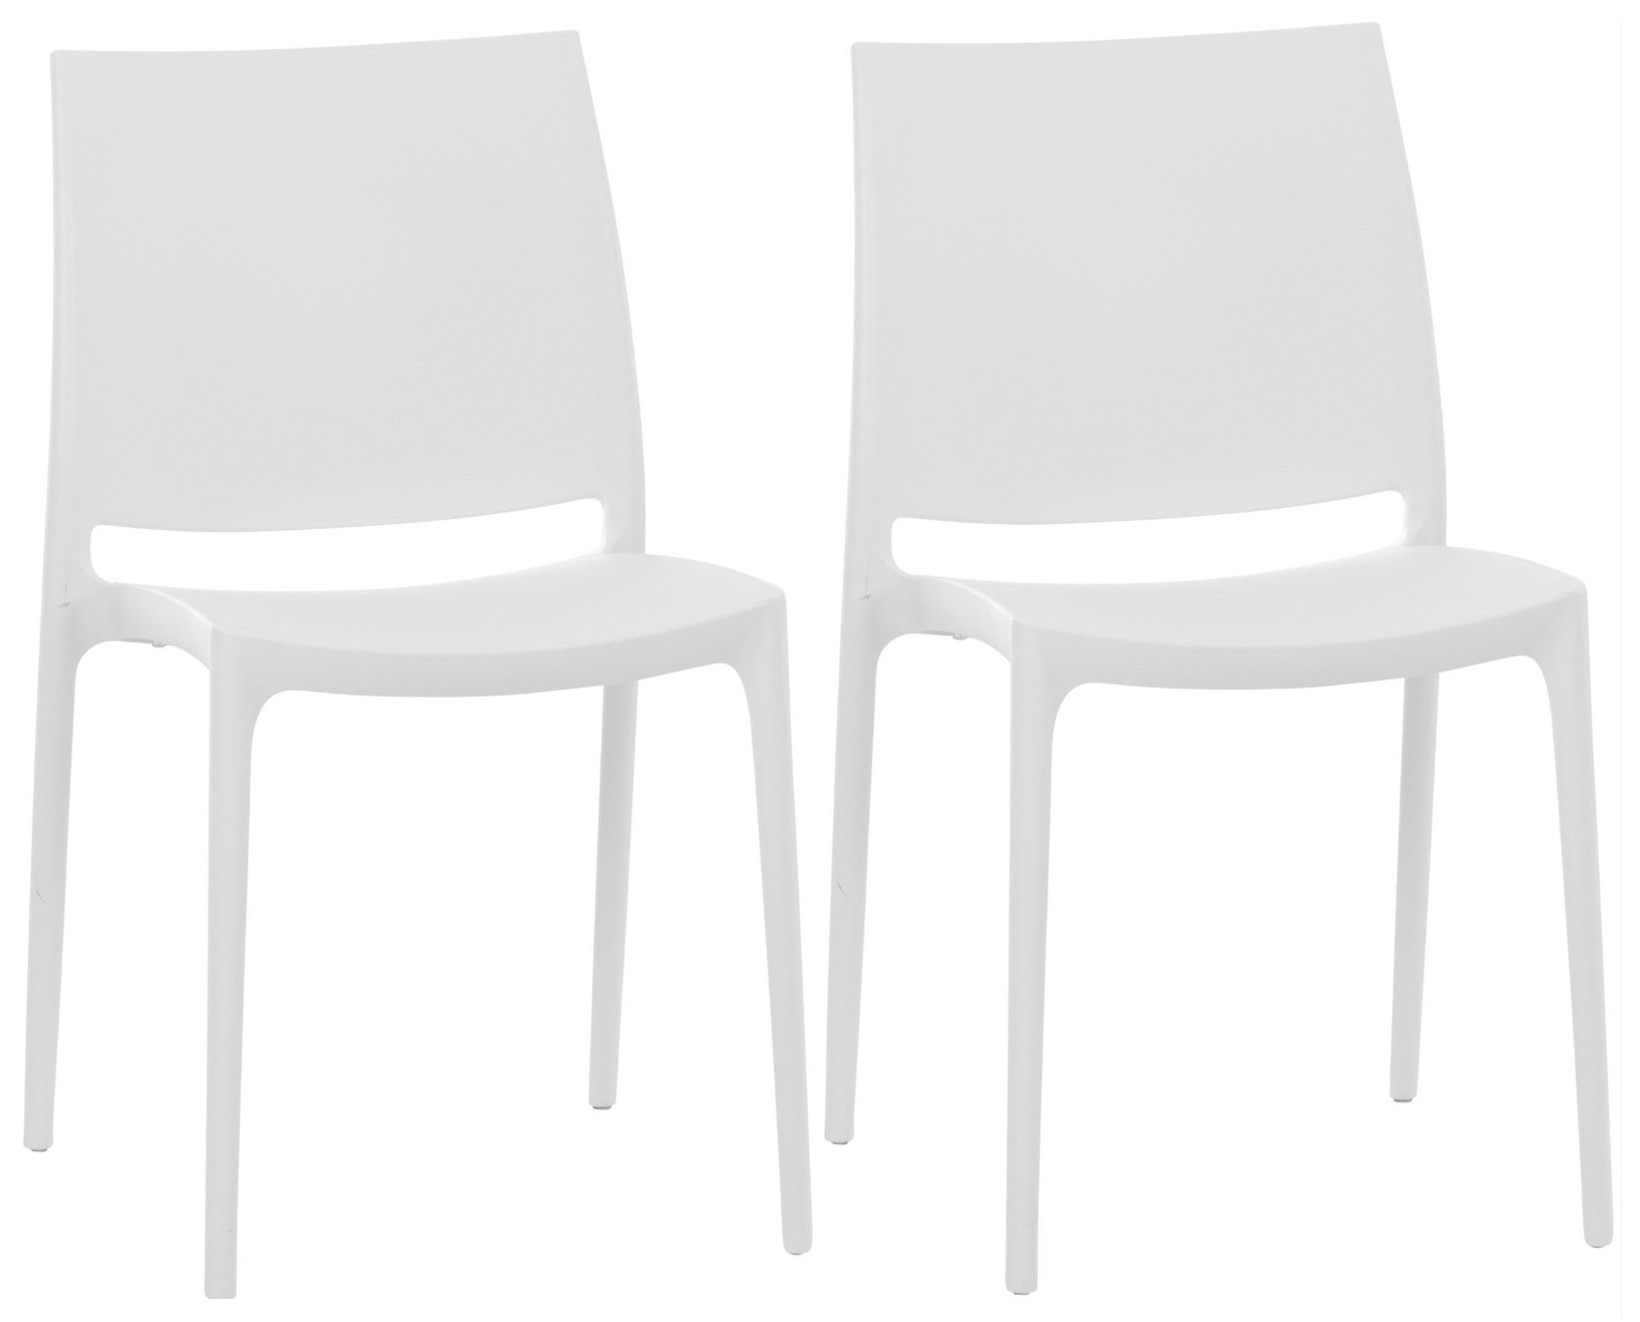 Lot 2 chaises de jardin empilables en plastique Blanc